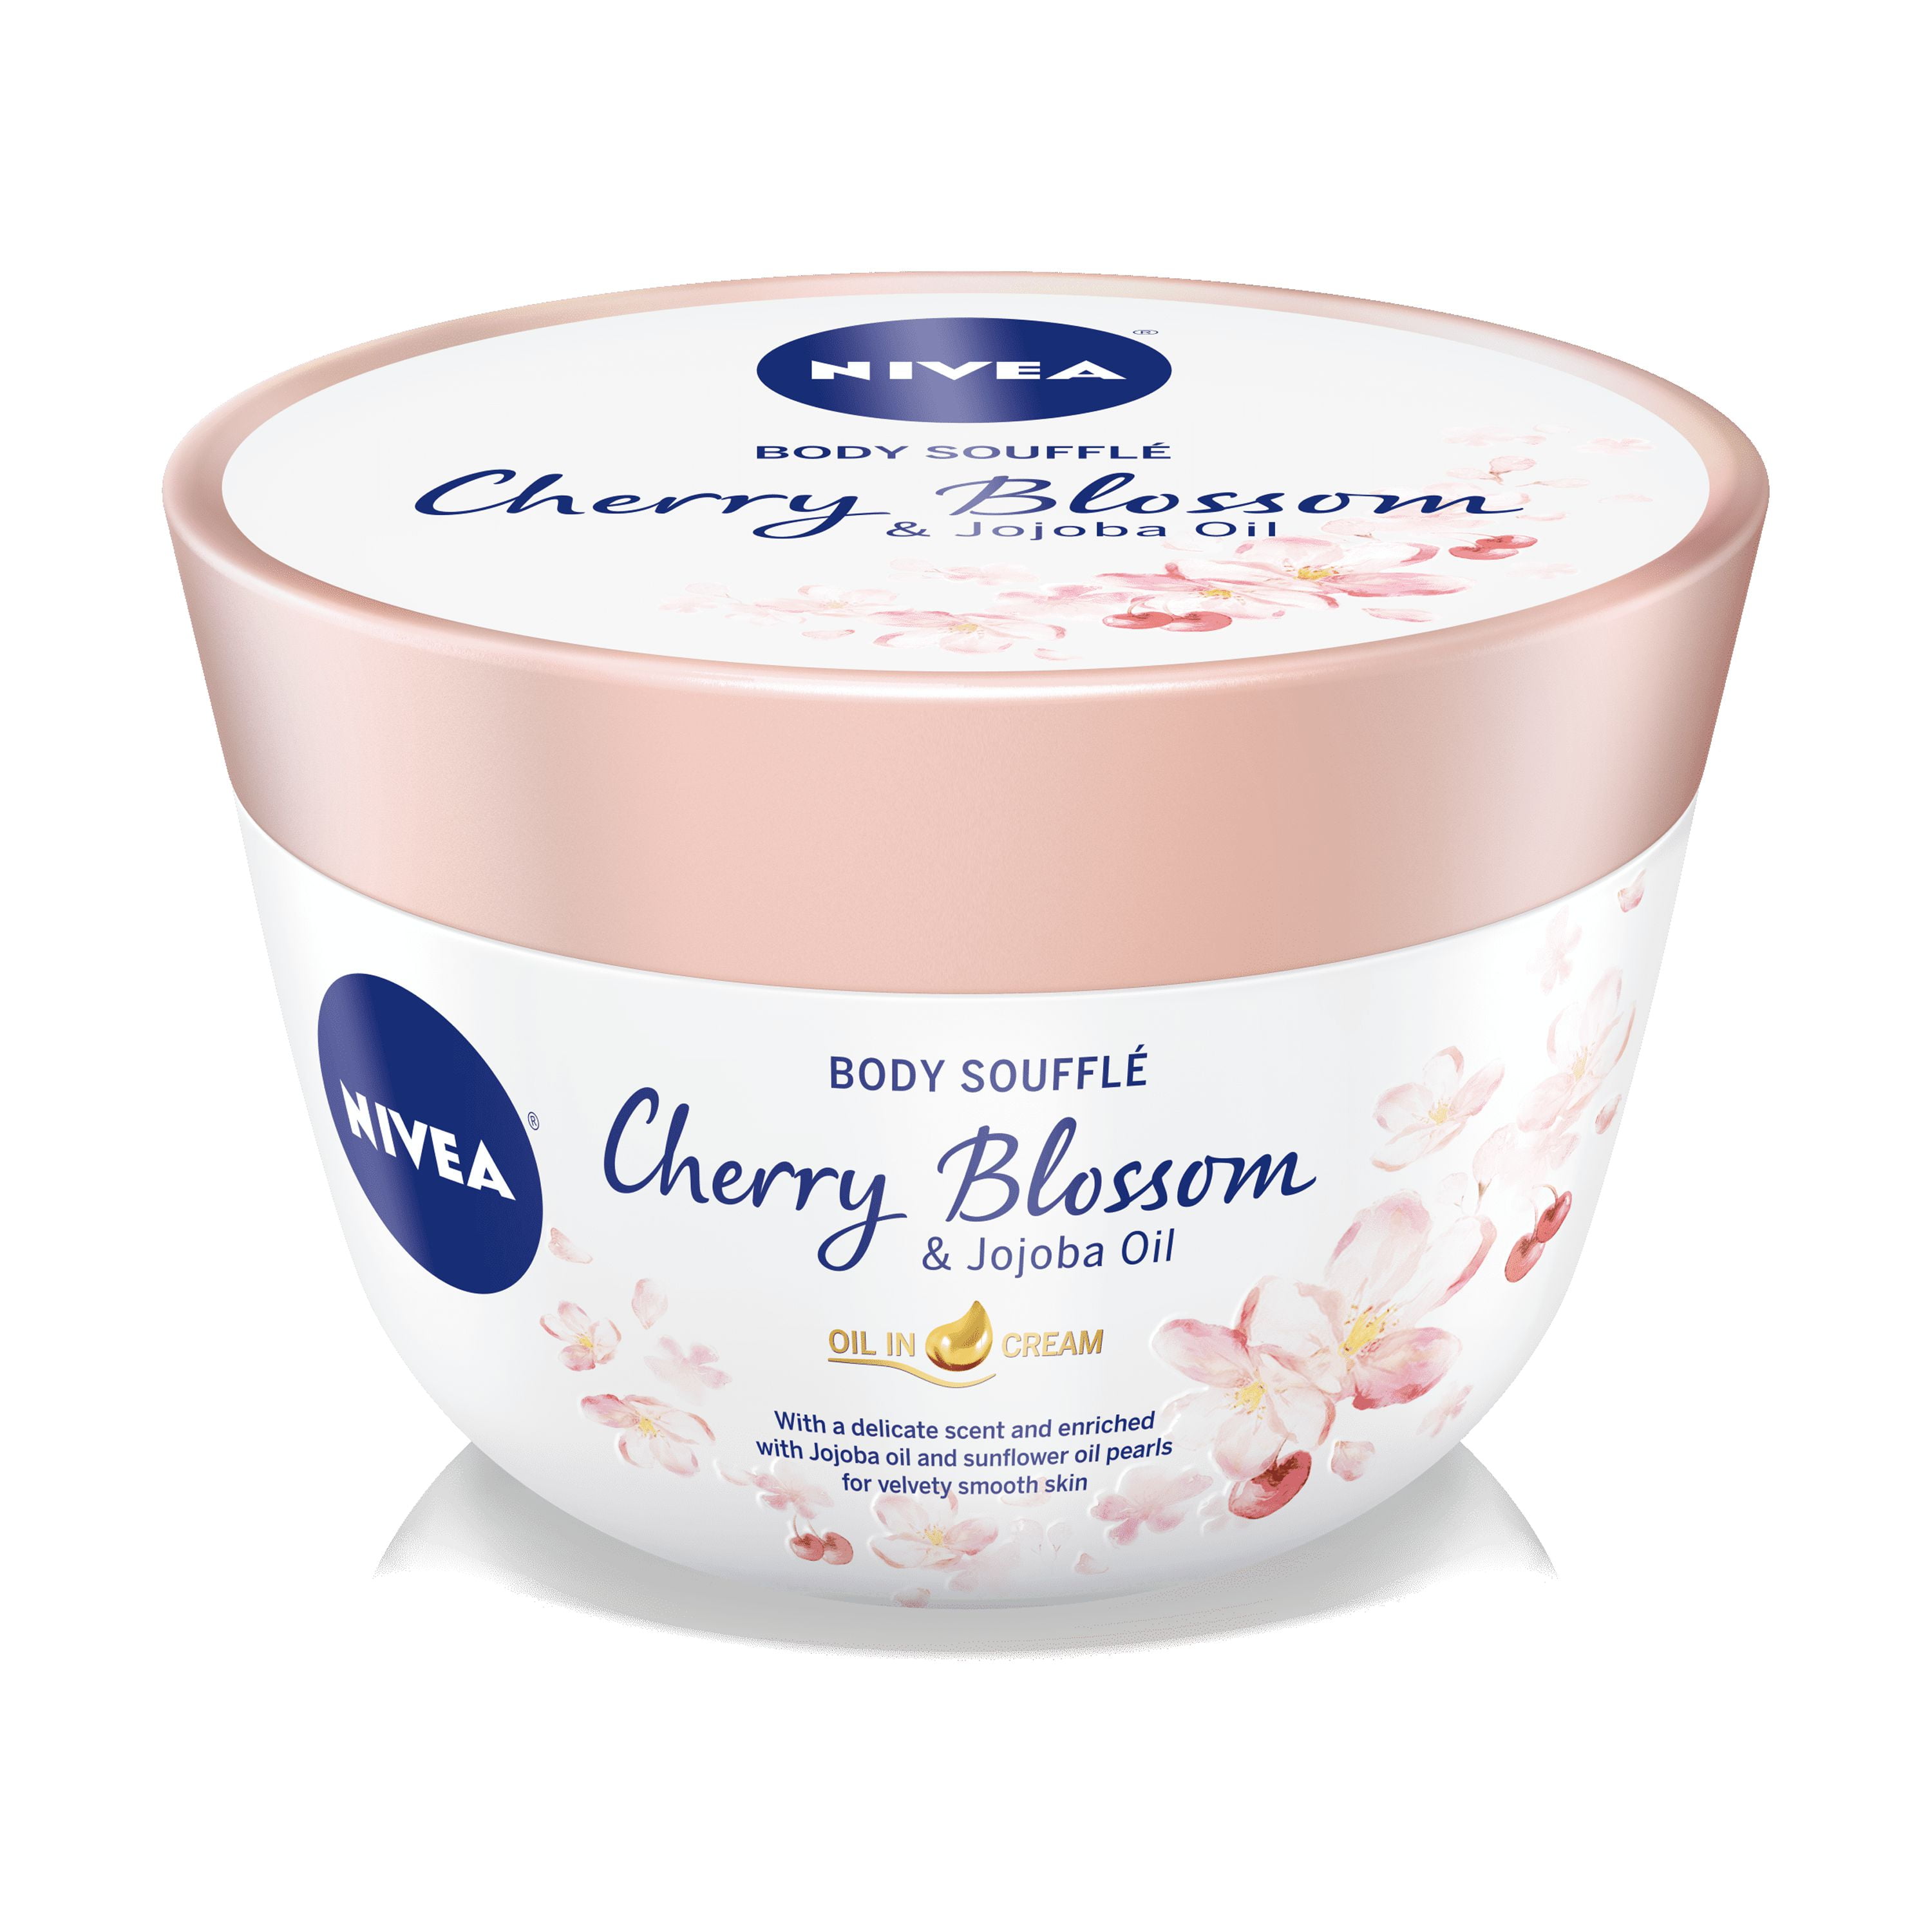 NIVEA Cherry Blossom & Jojoba Oil Body Cream Souffle , 6.8 oz - Walmart.com